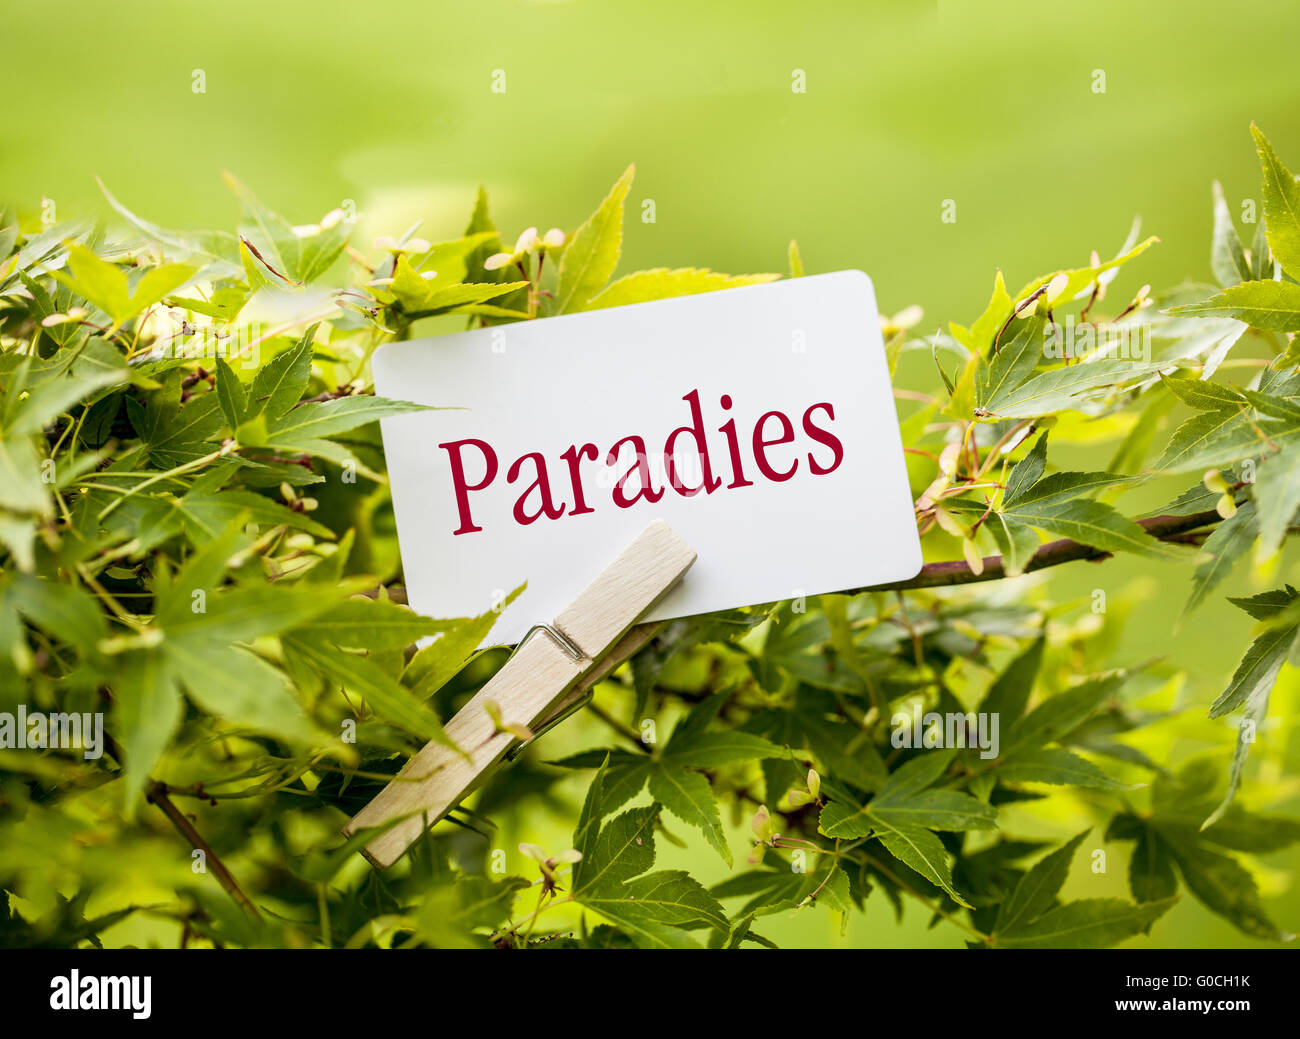 Das Wort "Paradies" in einem Fan-Ahorn-Baum Stockfoto